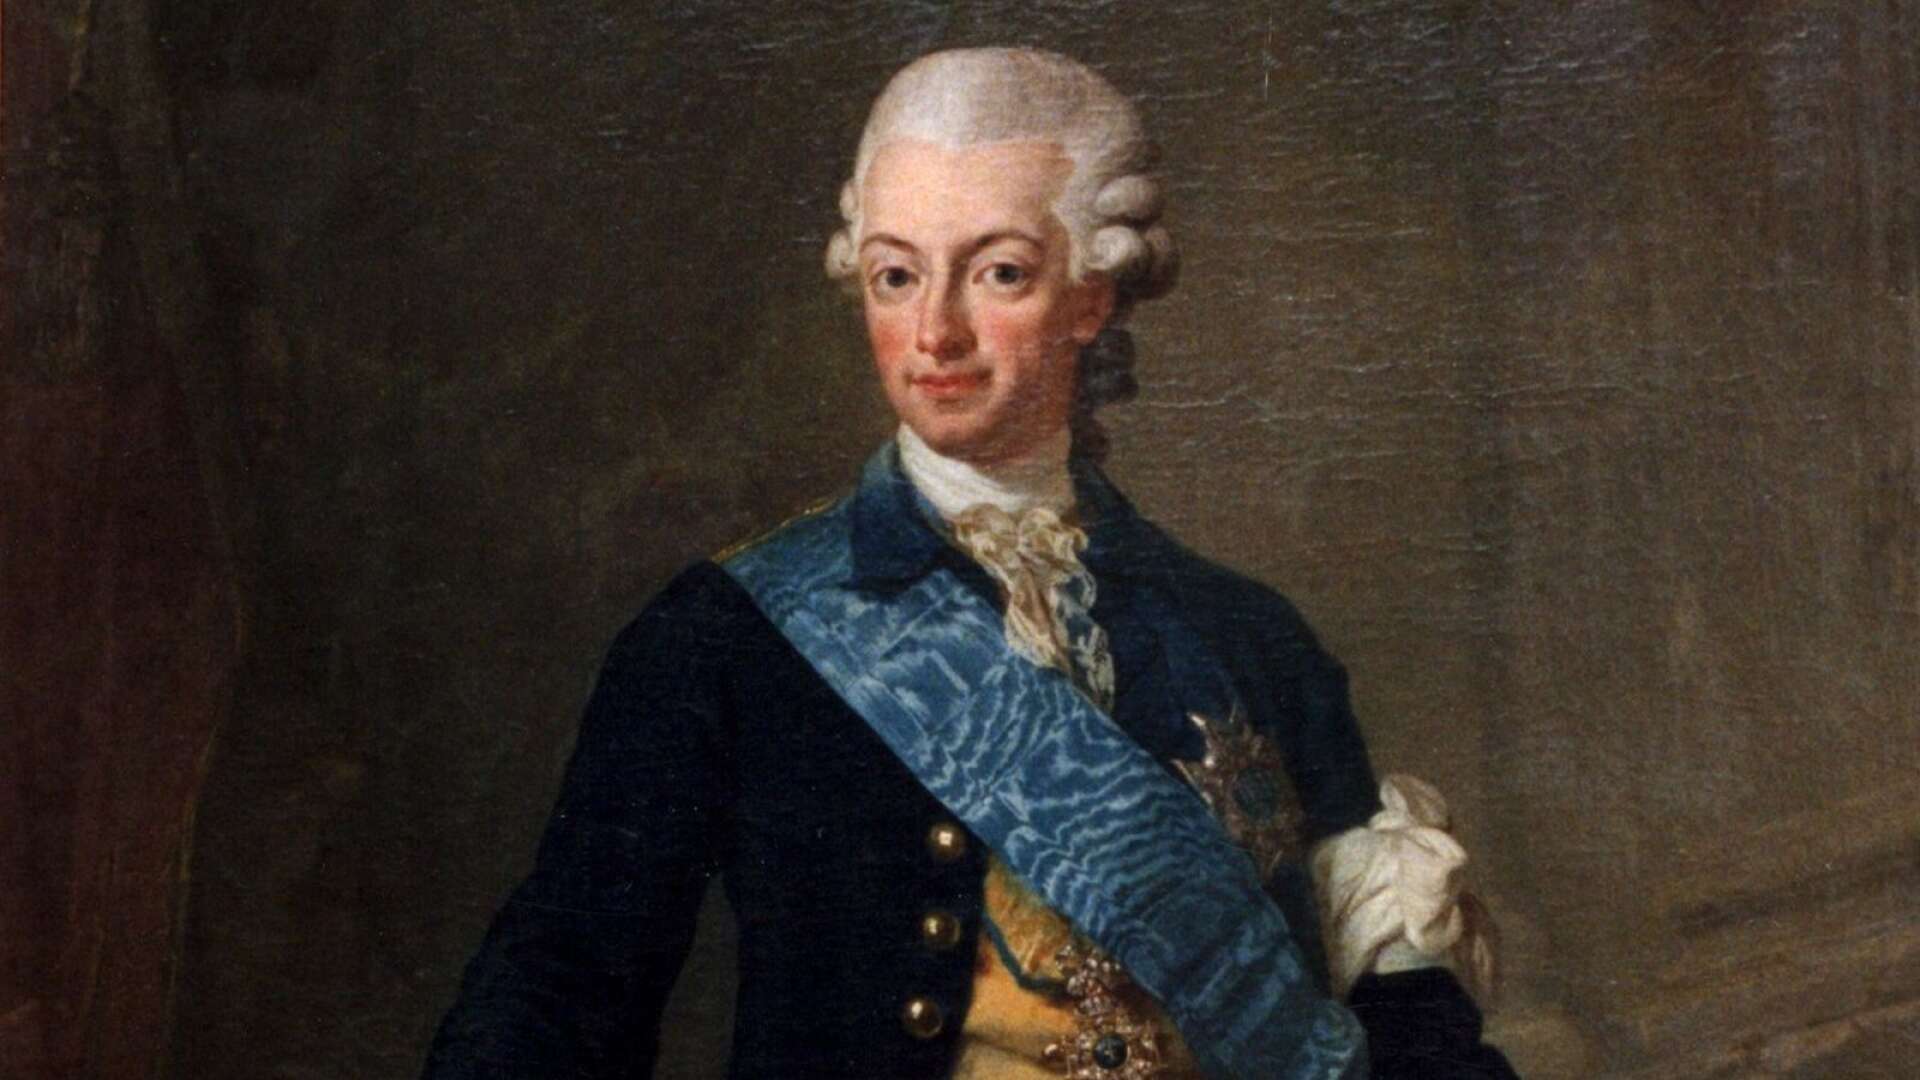 Av ett antal förslag från EU framgår att unionen är mindre välvilligt inställd till jakt än Gustav III var, skriver Pia Clerté.